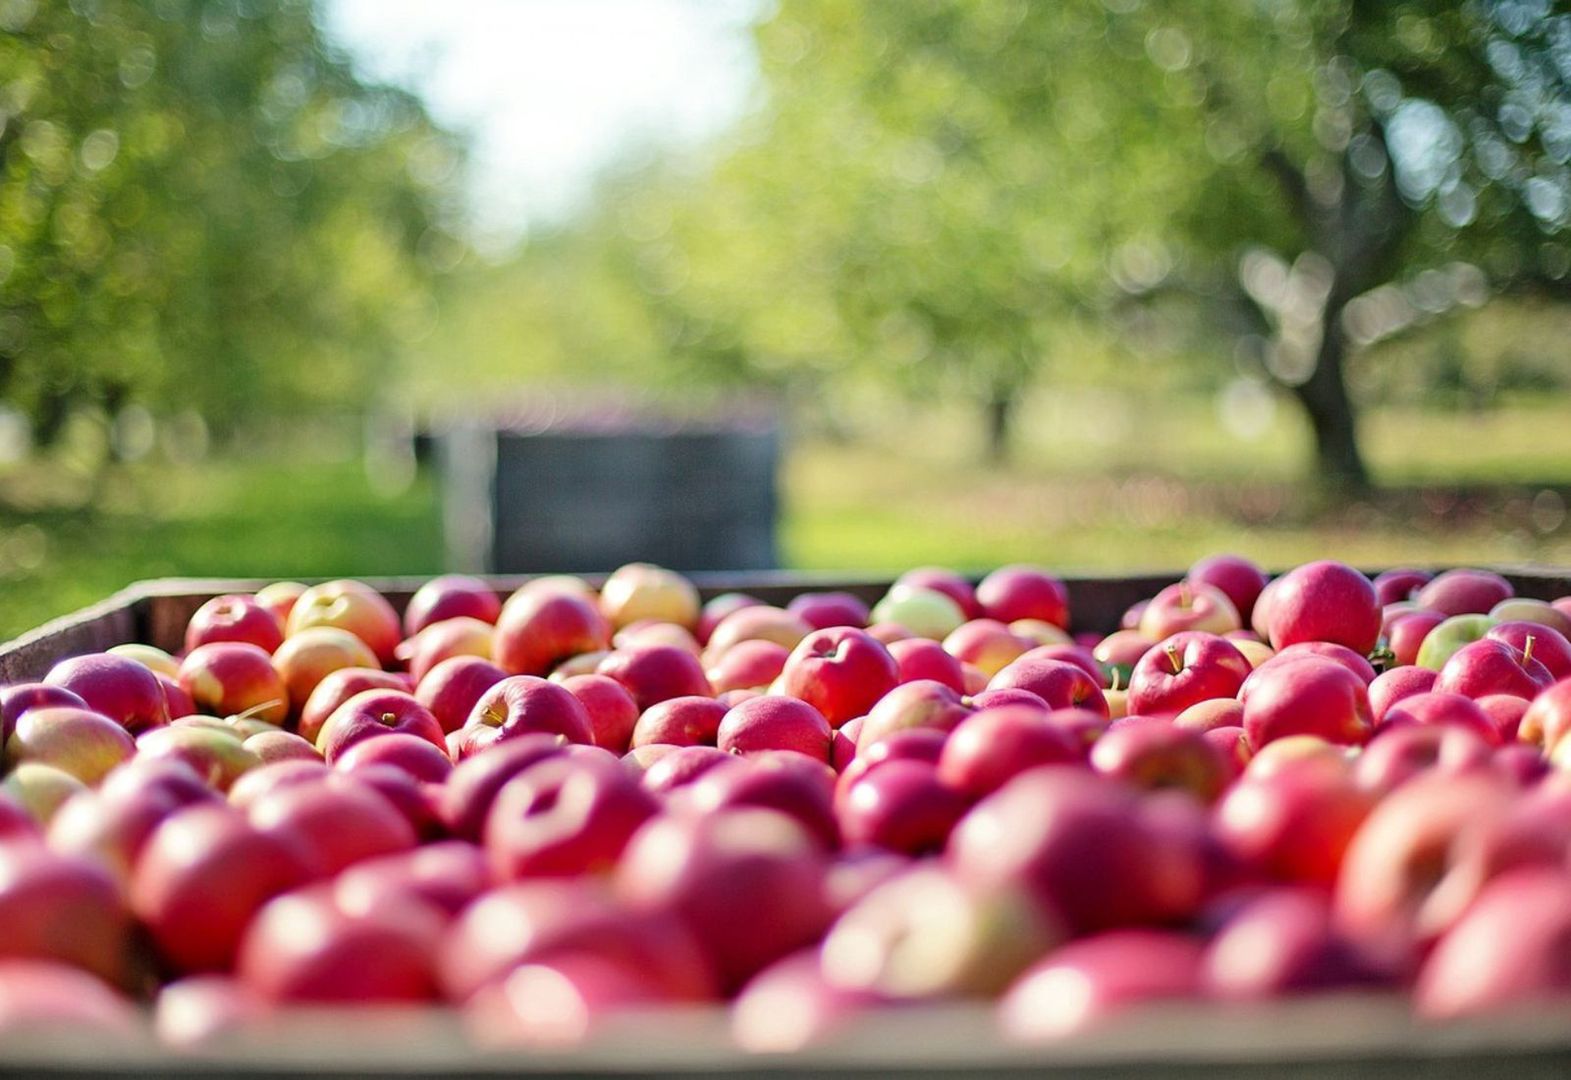 Jak skutecznie usunąć pestycydy z jabłek? Umycie owocu wodą nie wystarczy